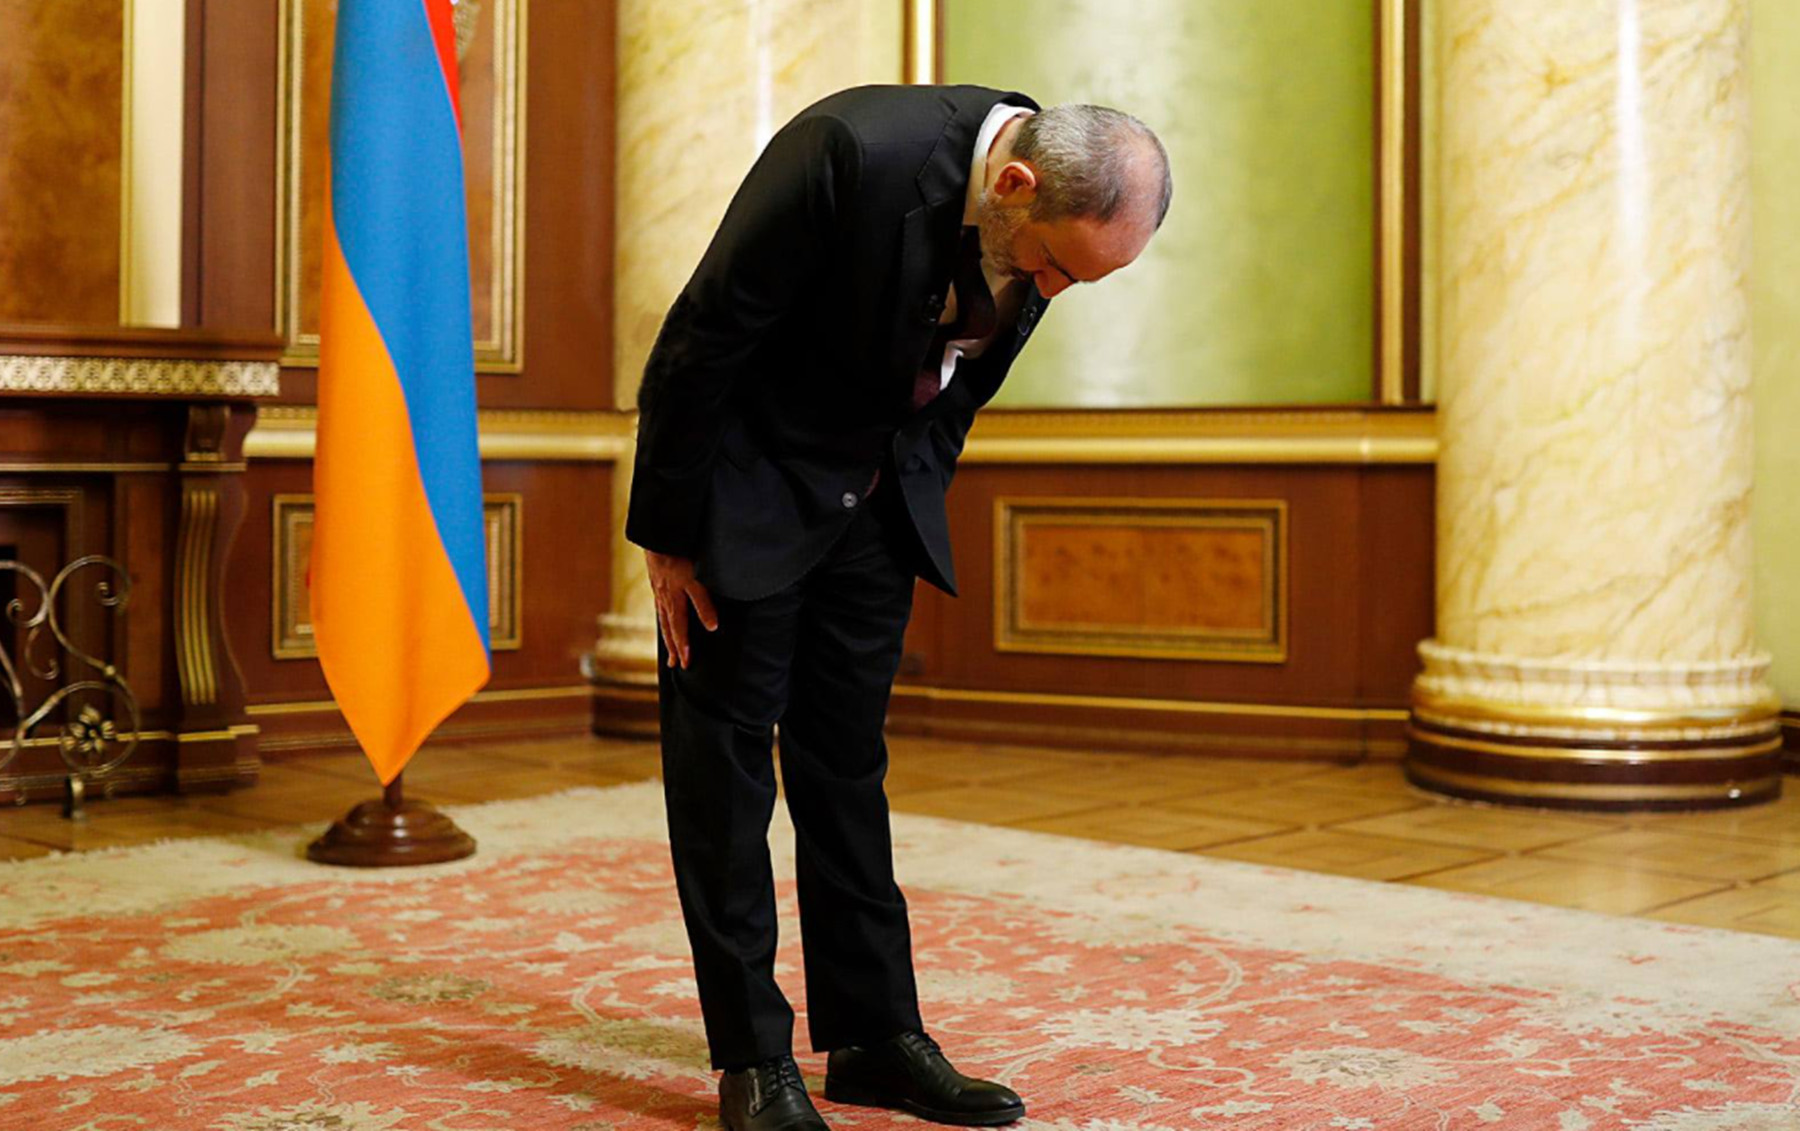 Εκλογές Αρμενία 2021: Παραιτήθηκε ο Νικόλ Πασινιάν